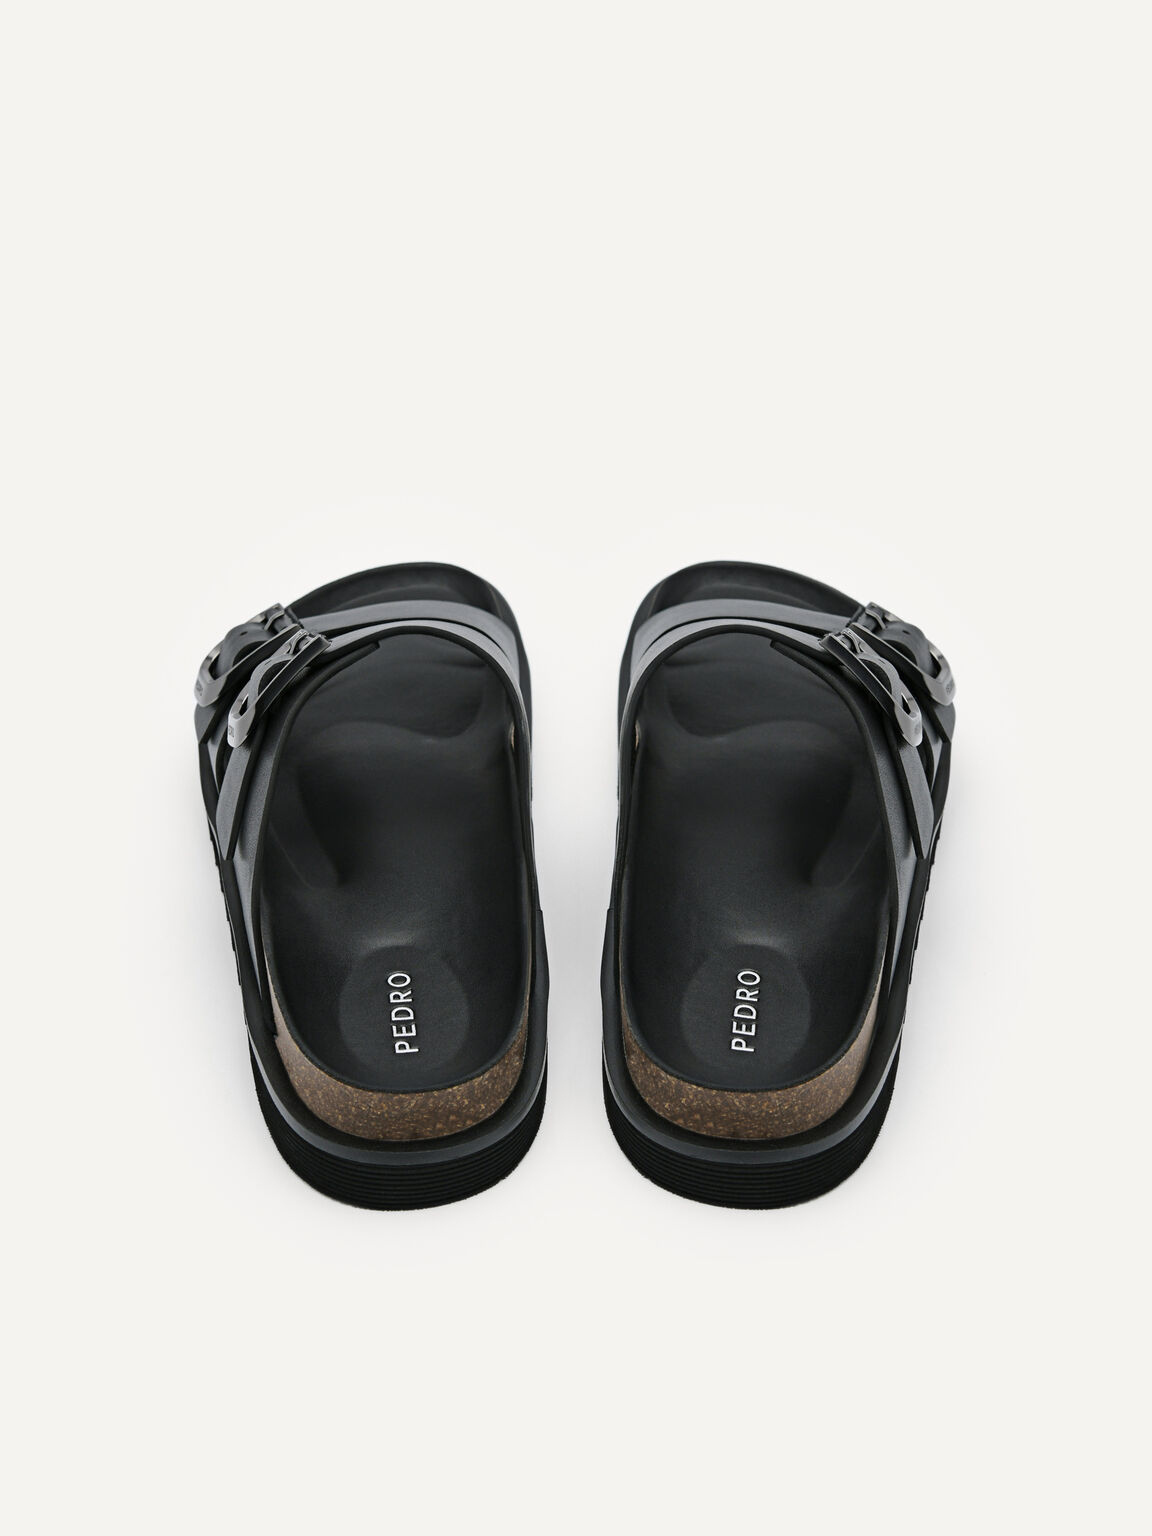 Men's Helix Slide Sandals, Black